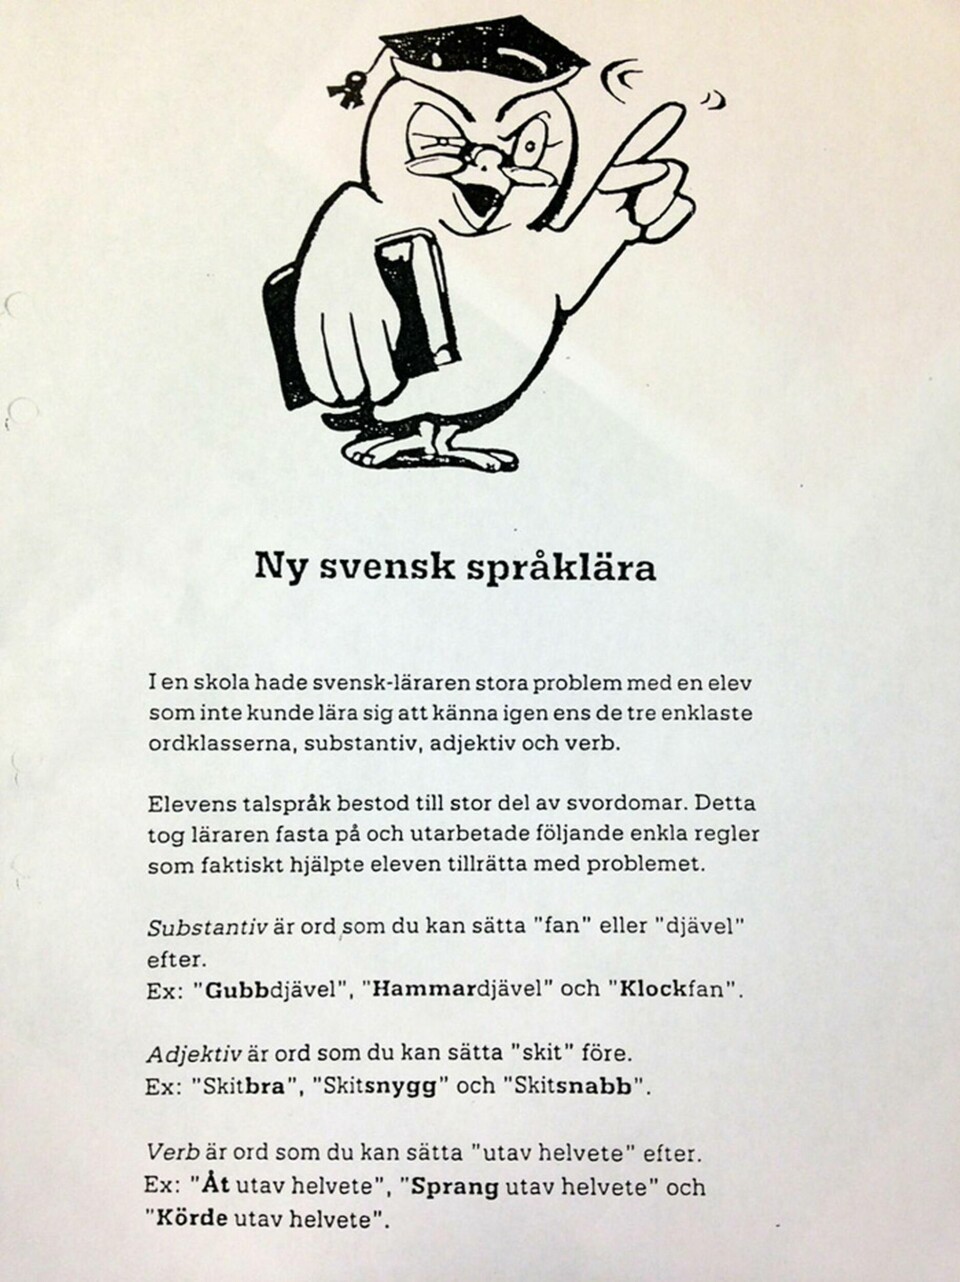 Ny svensk språklära, grammatikdagen till ära. (klicka för större bild)